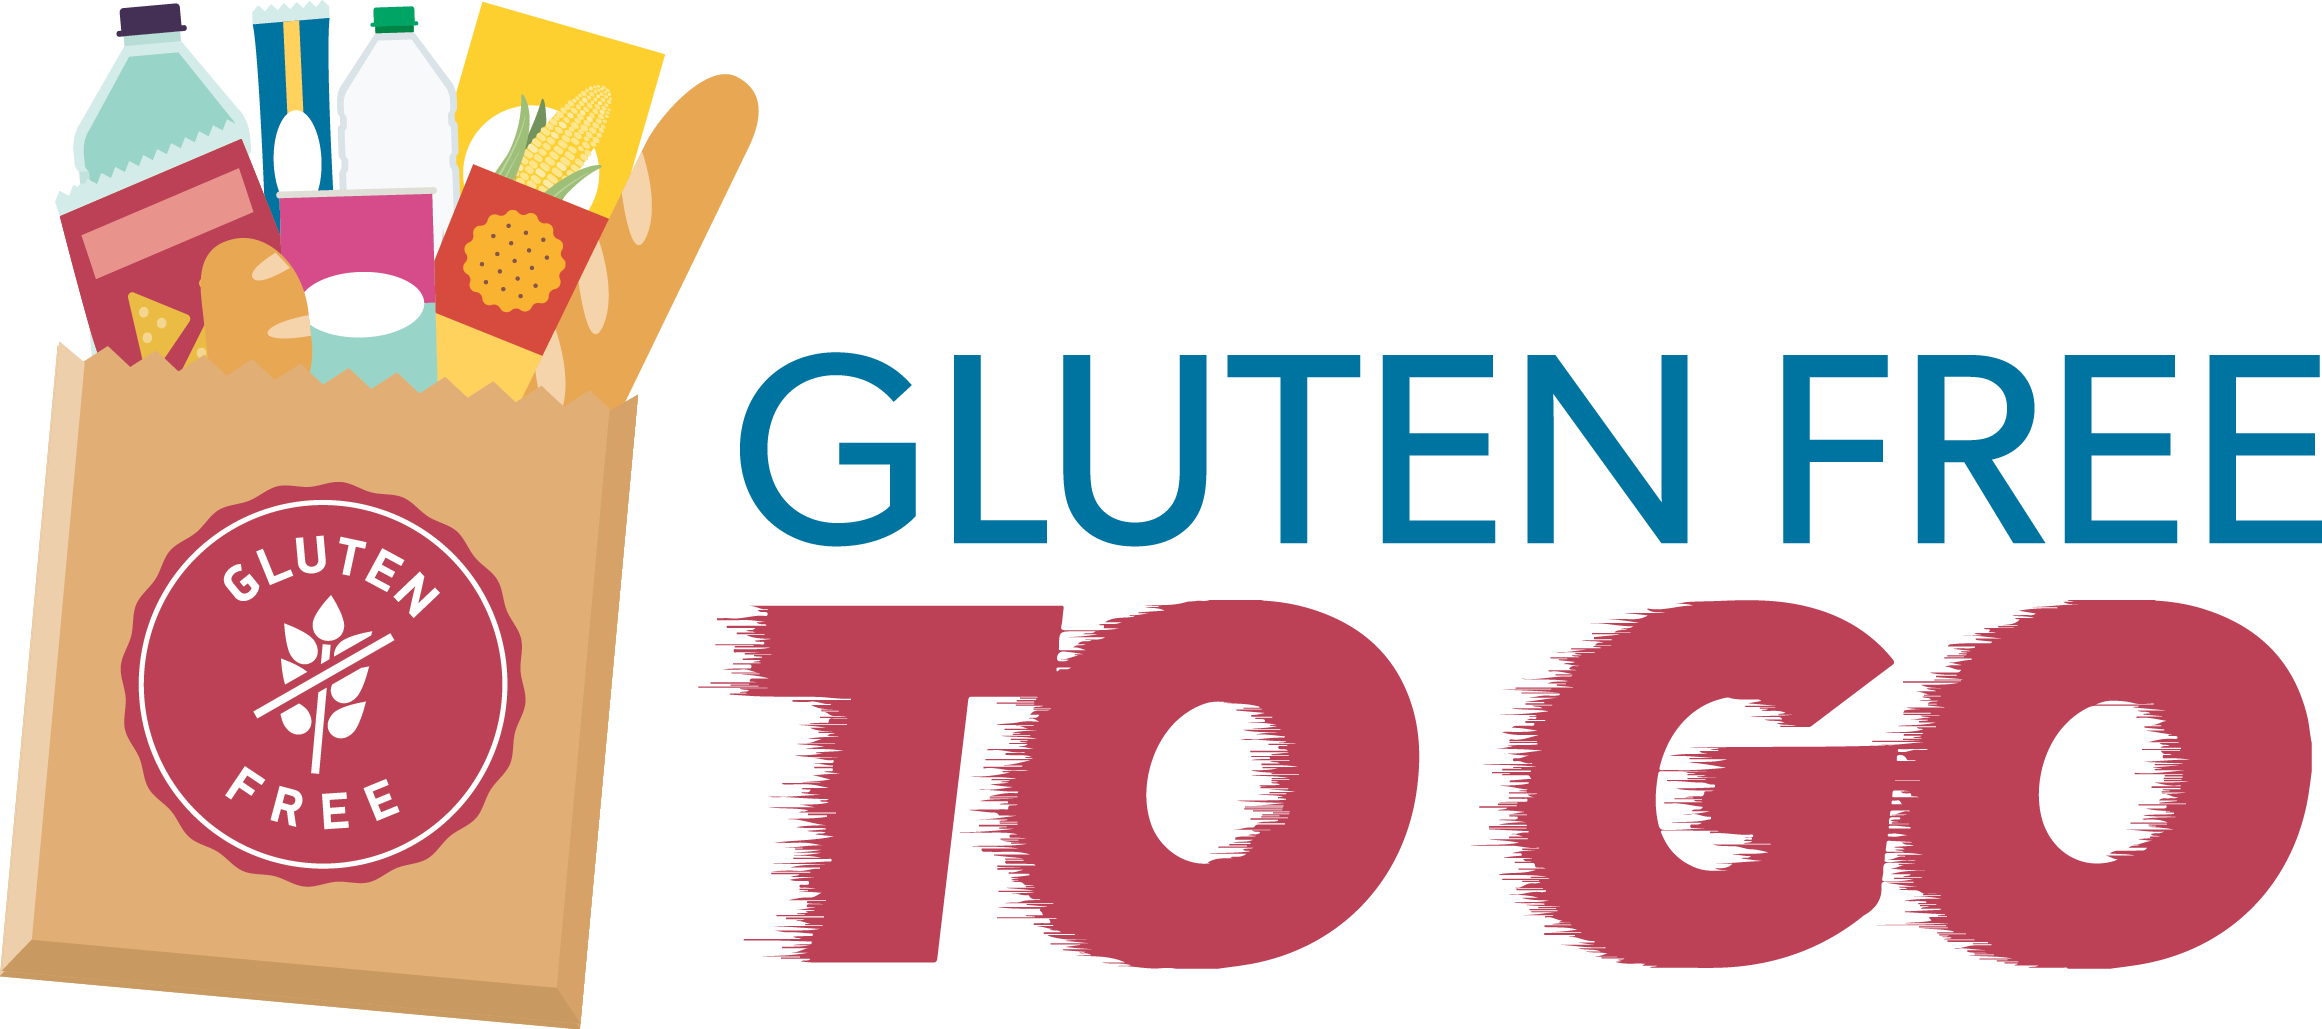 What We Do - Gluten-free Diet (2322x1029)